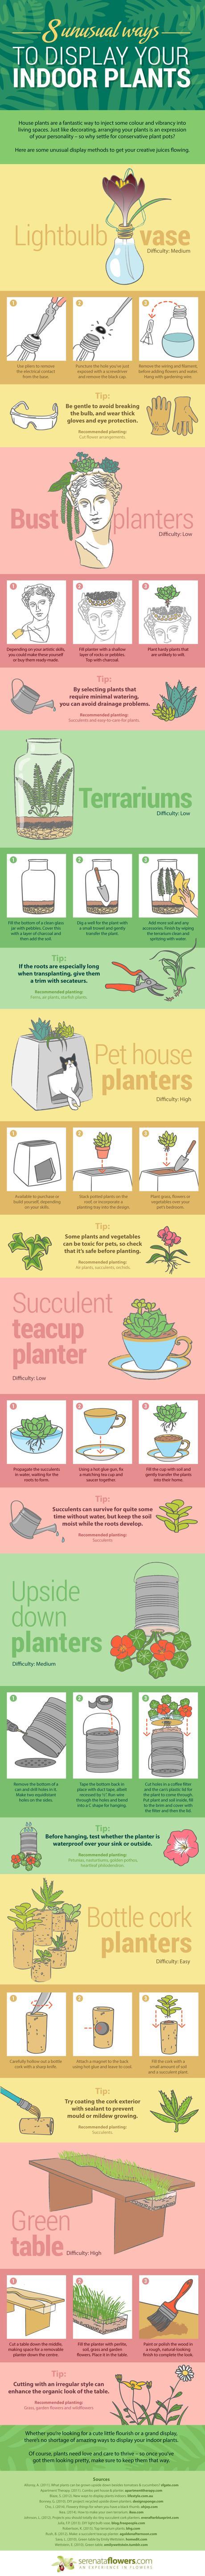 Indoor plants infographic